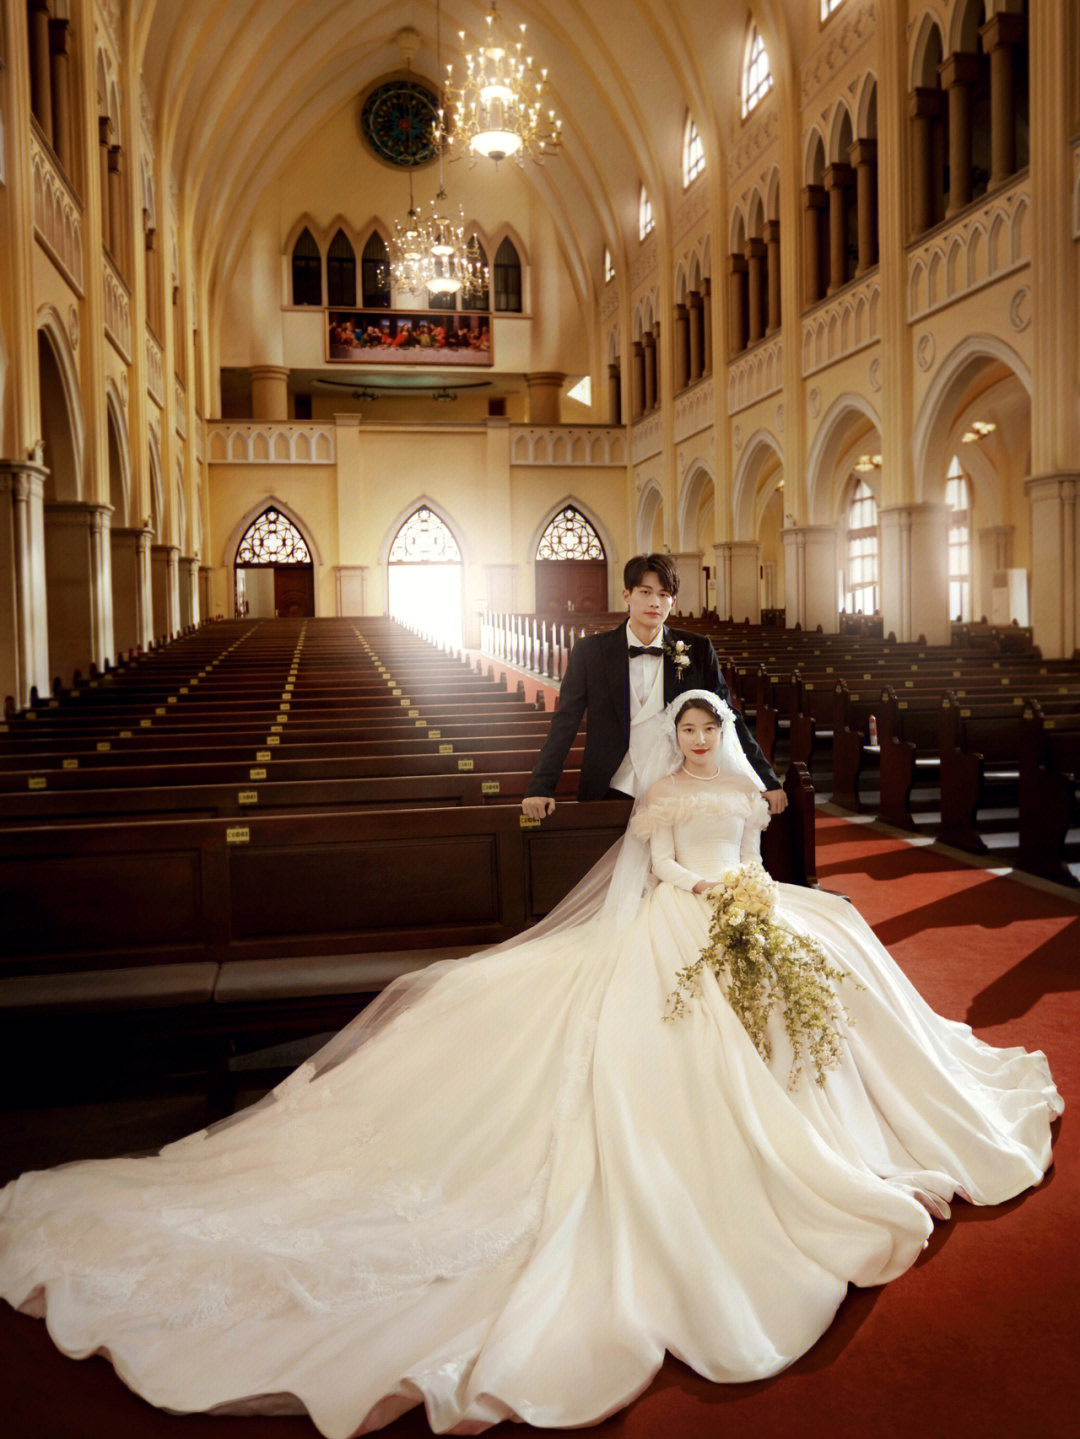 教堂婚纱照爱情的正确打开方式仪式感满满